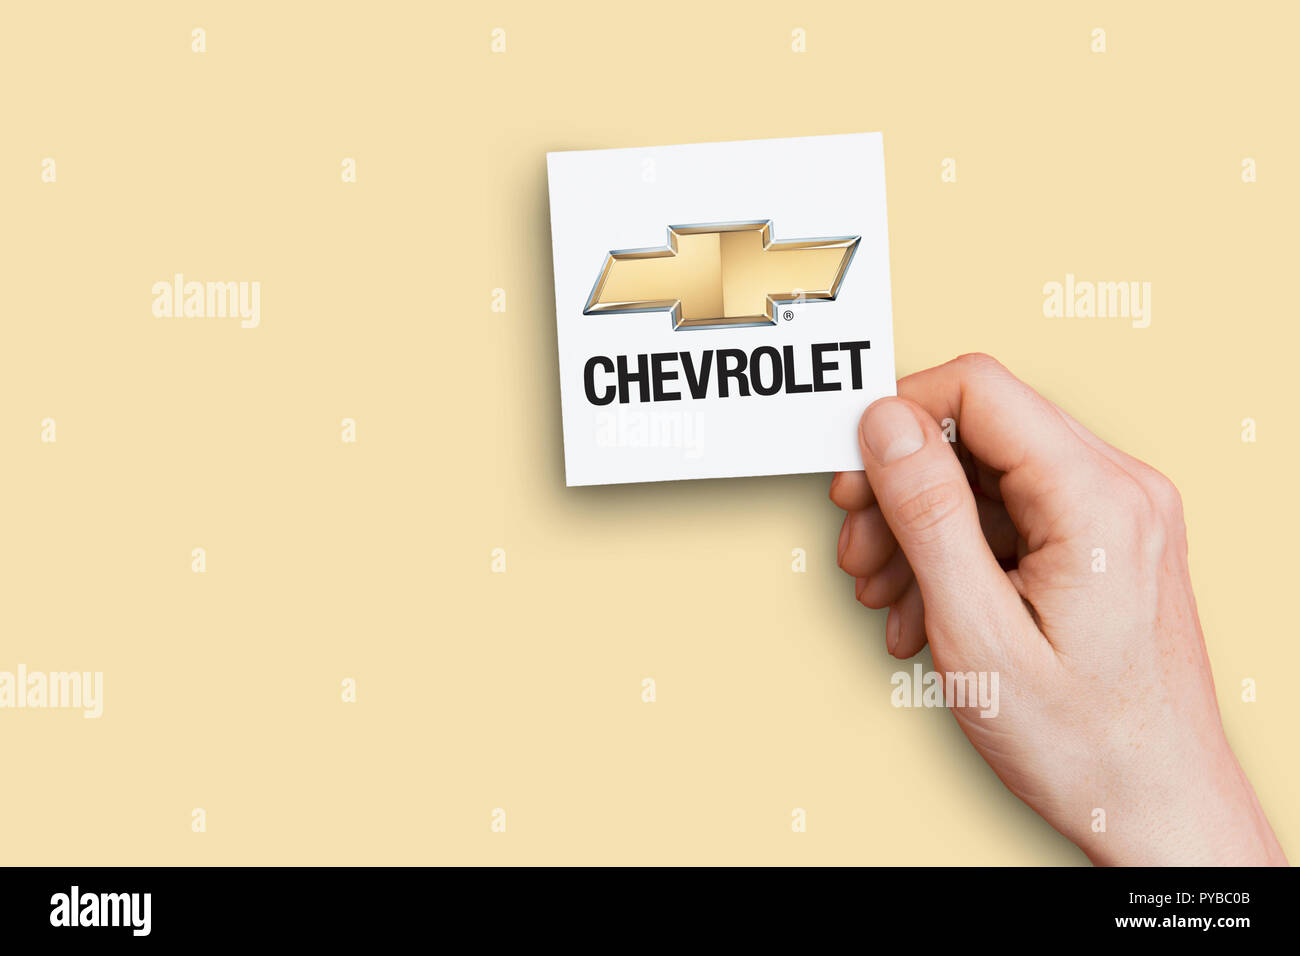 LONDON, UK, 26. Oktober 2018: die Hand mit einem Chevrolet Logo. Chevrolet ist ein Hersteller von Automobilen. Stockfoto